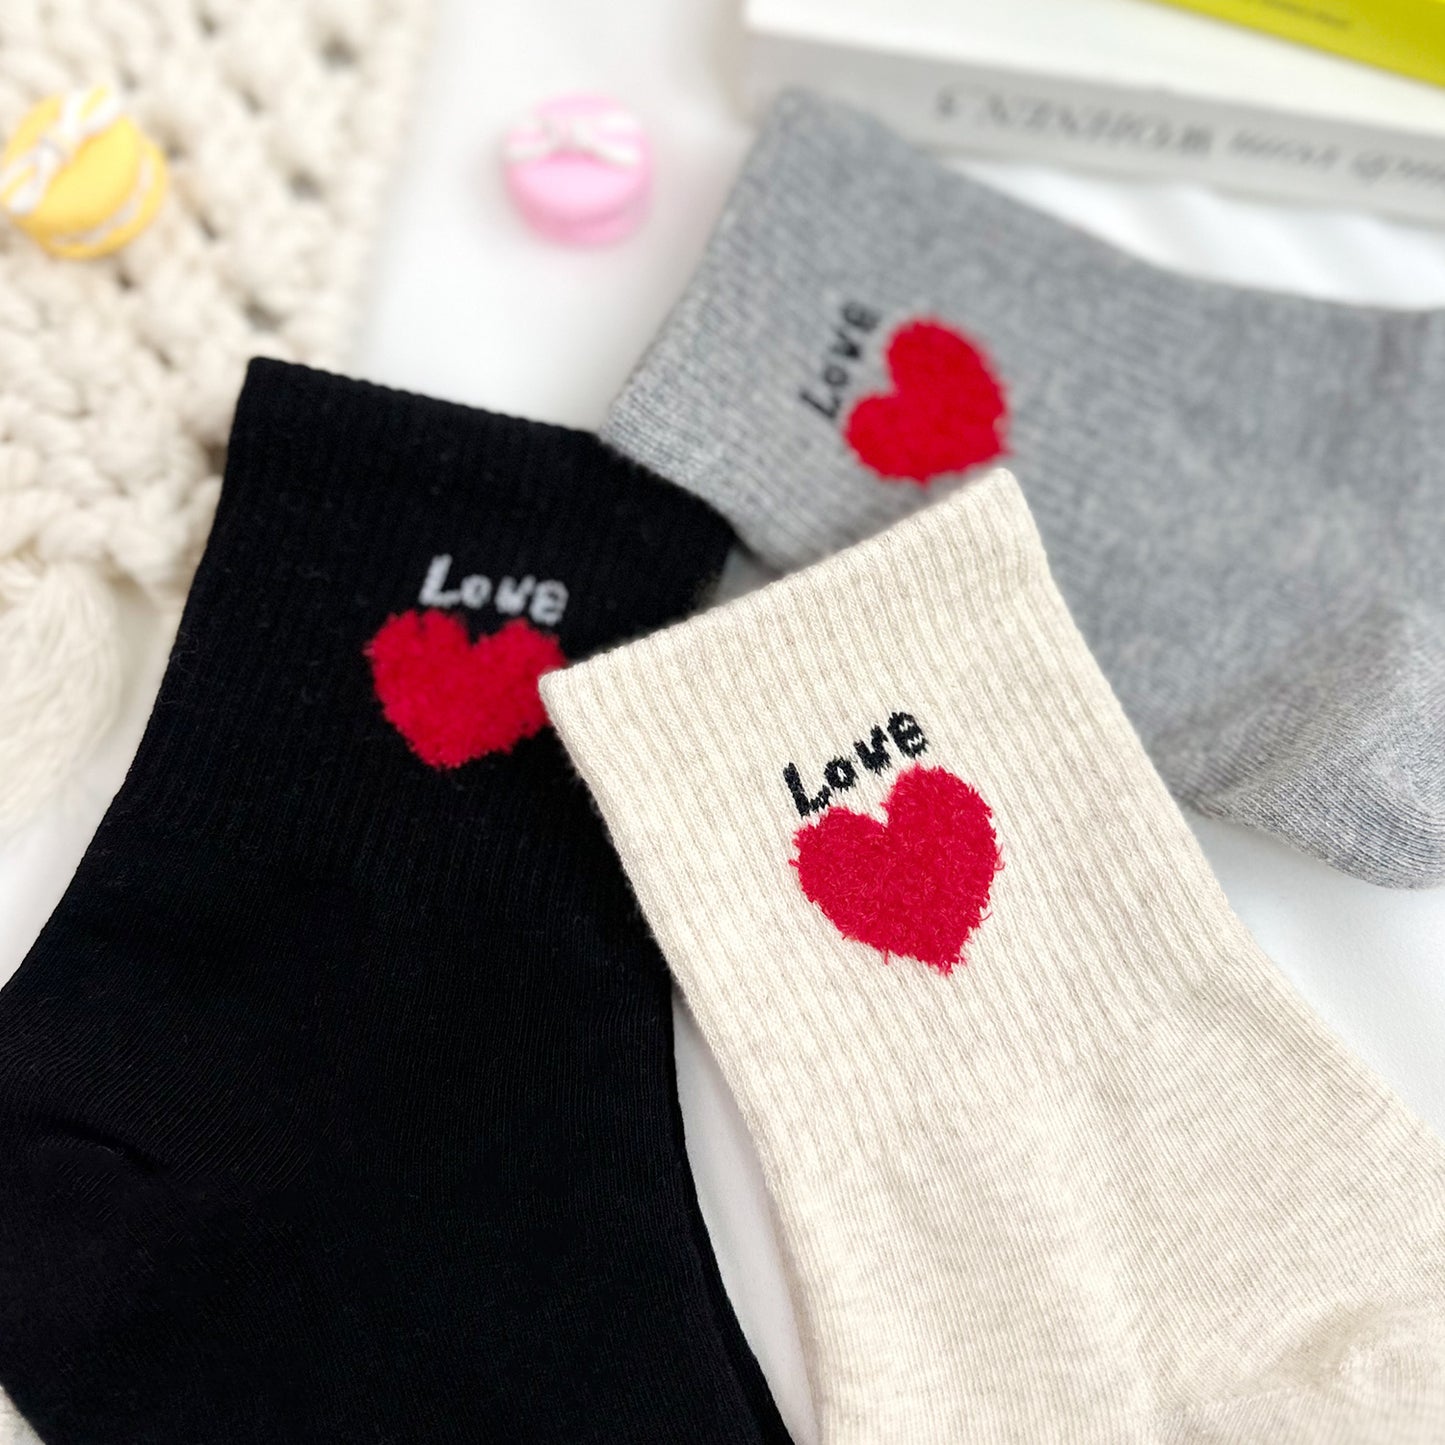 Women's Crew Love Gram Socks